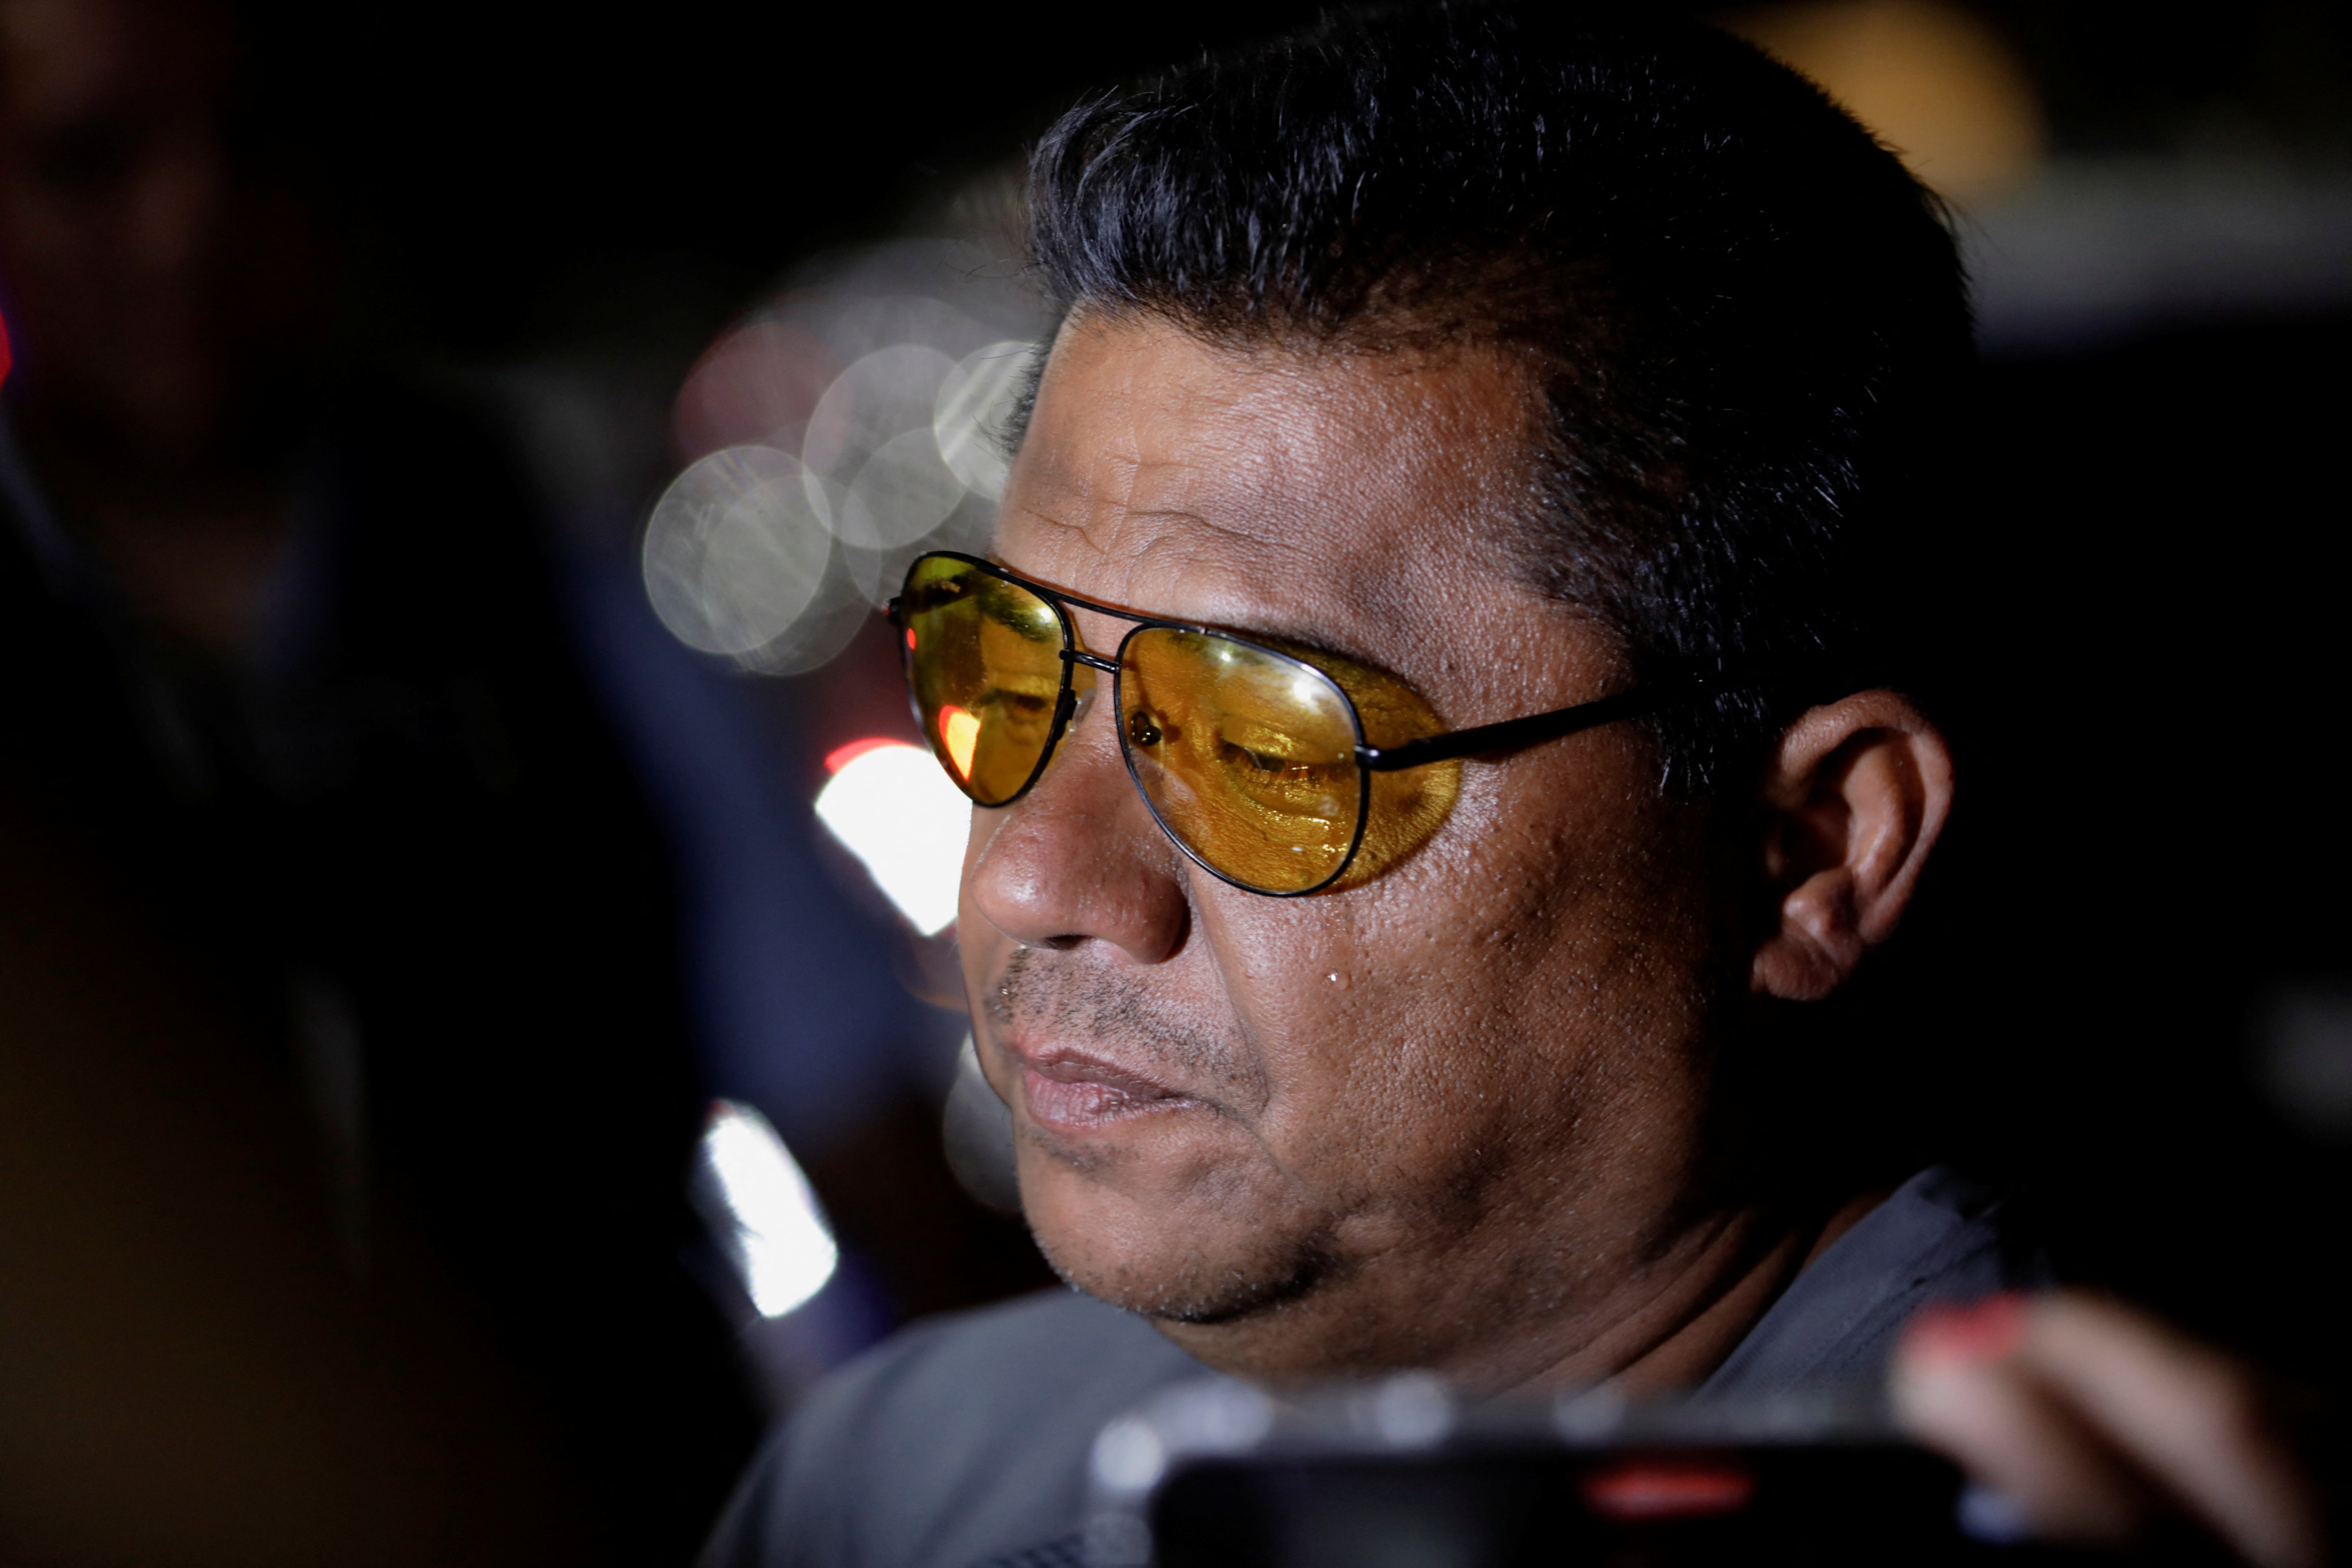 Juan David negó las acusaciones de Mario Escobar sobre un presunto acoso de su parte (Foto: REUTERS/Daniel Becerril)